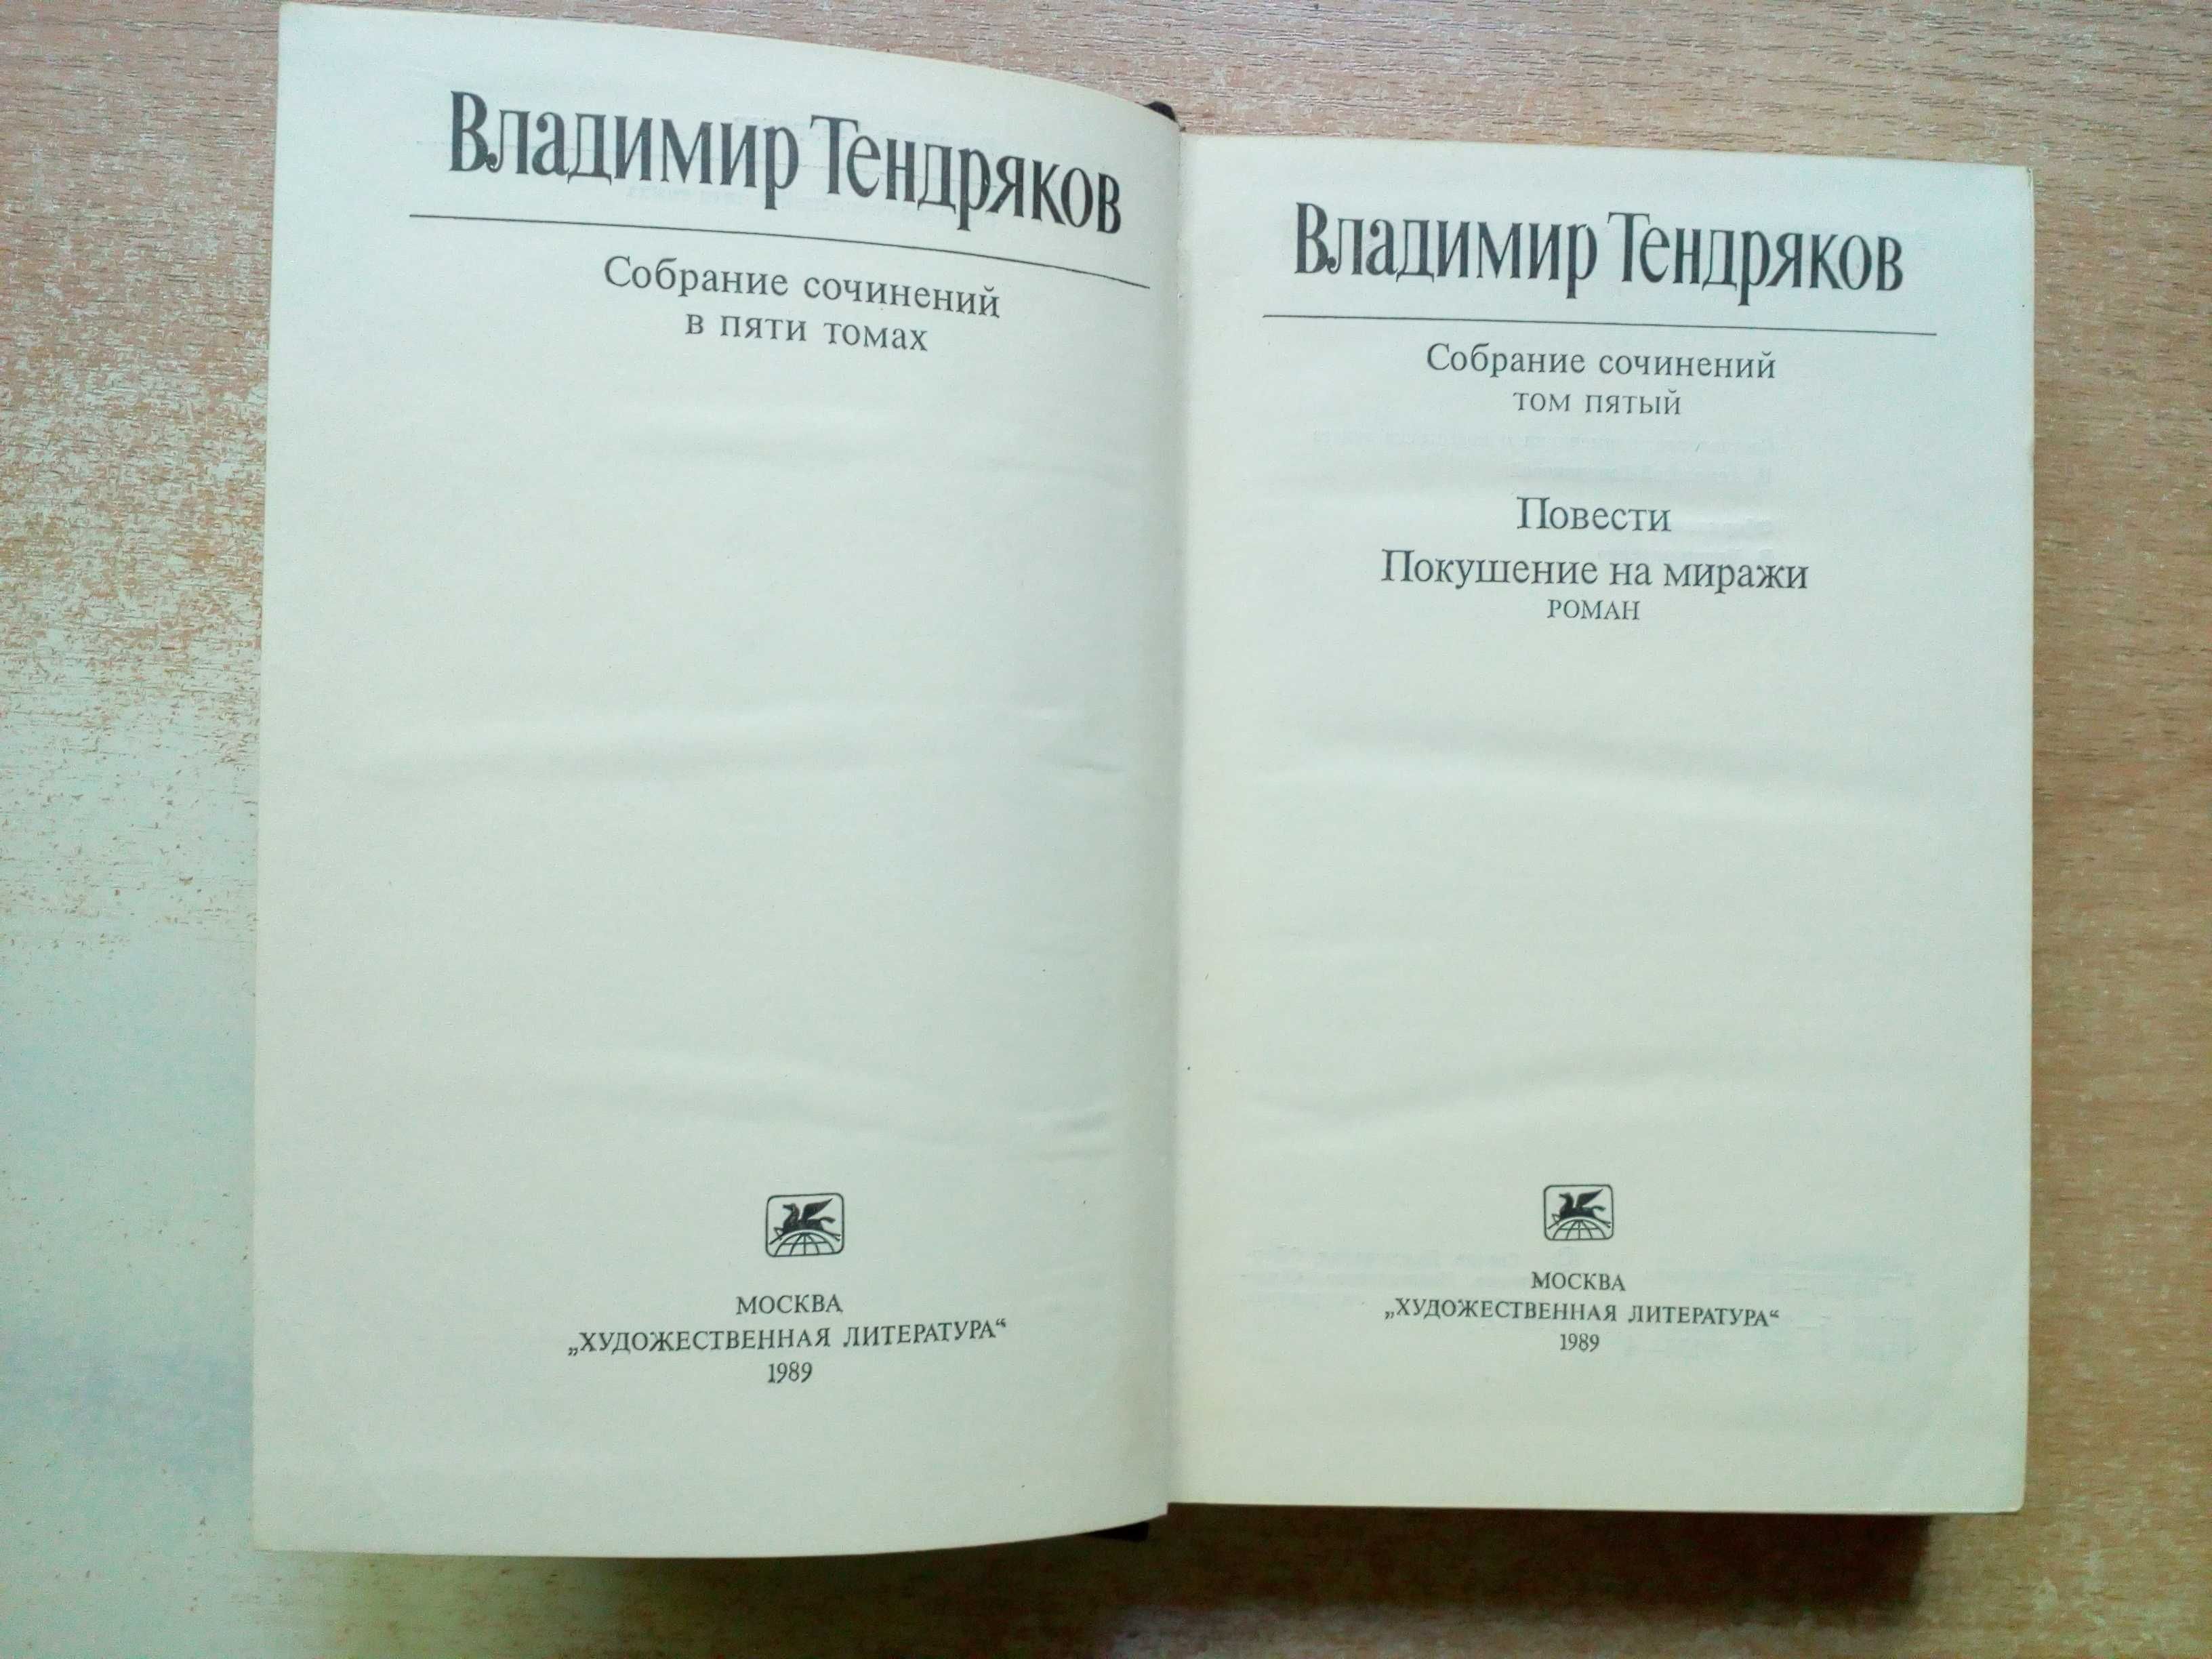 Тендряков"Собрание сочинений в 5-и томах"(Есть только 4 тома).